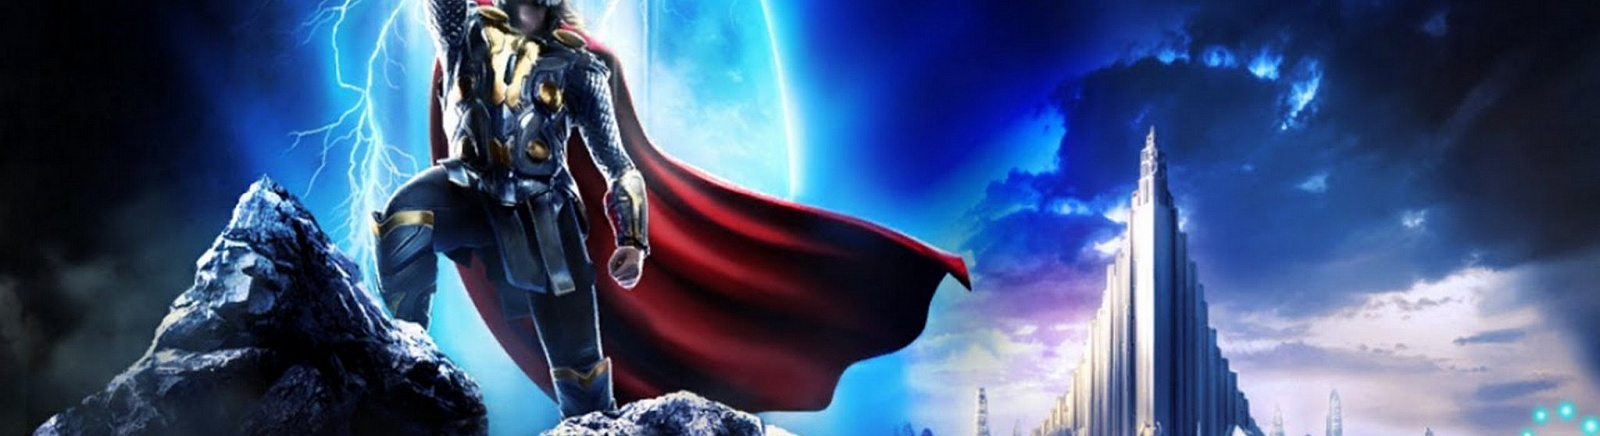 Дата выхода Thor: The Dark World  на iOS и Android в России и во всем мире